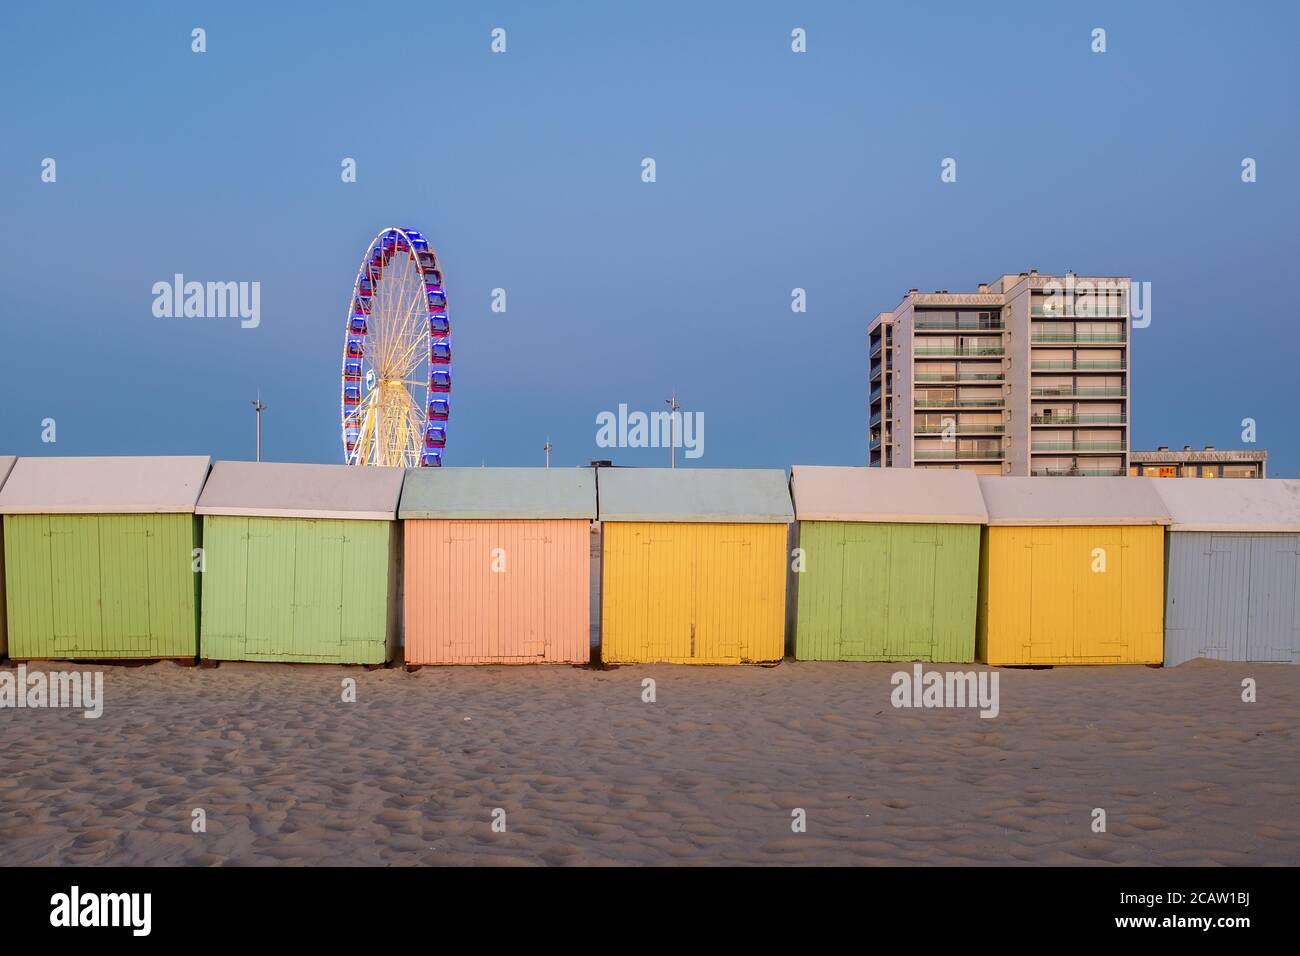 Cabines de plage aux couleurs pastel et roue géante sur la plage De Berck en France Banque D'Images